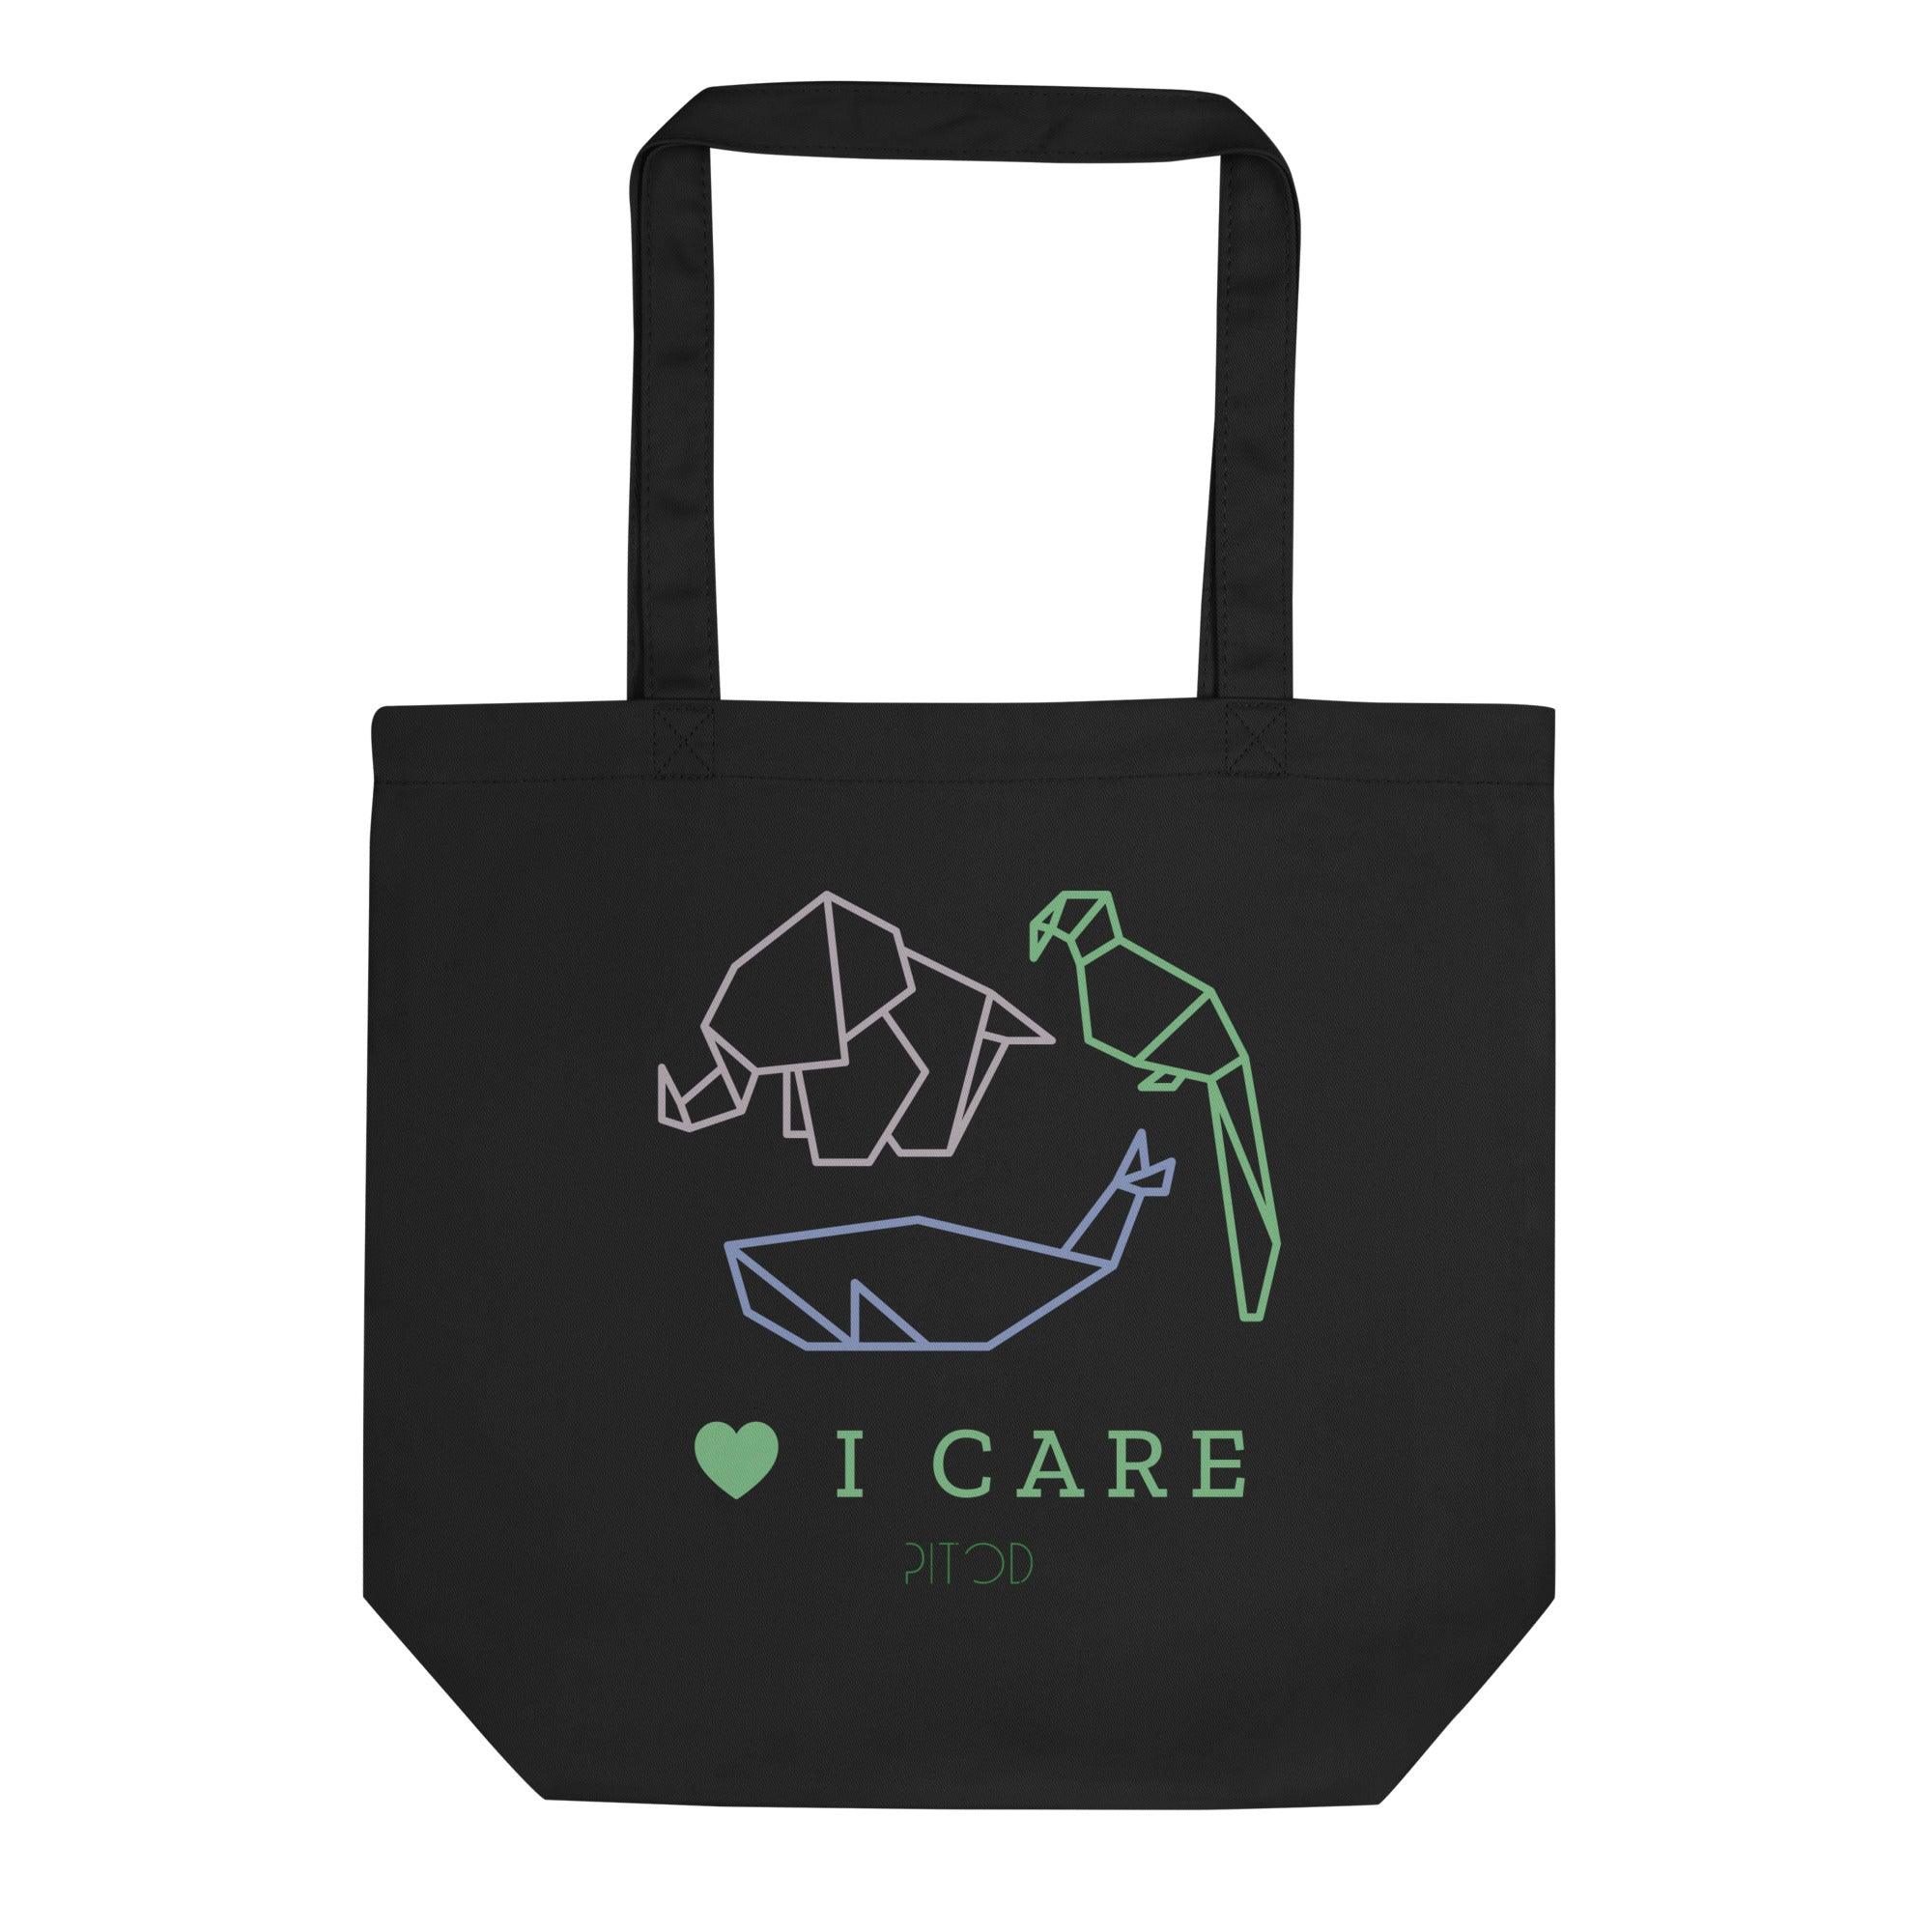 I Care Tote Bag product